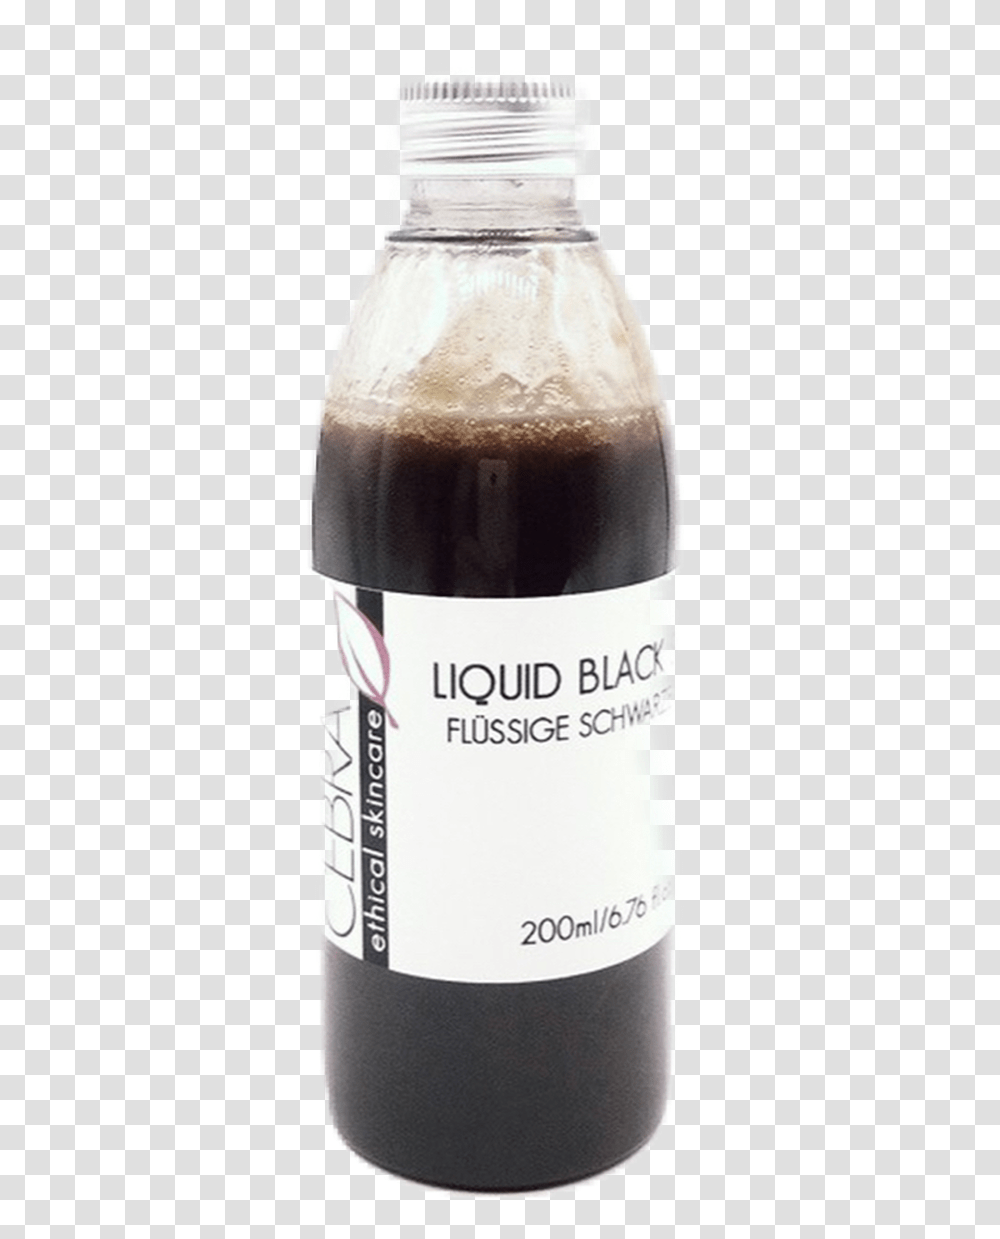 Vegan Liquid Black African Soap Glass Bottle, Milk, Beverage, Drink, Wedding Cake Transparent Png